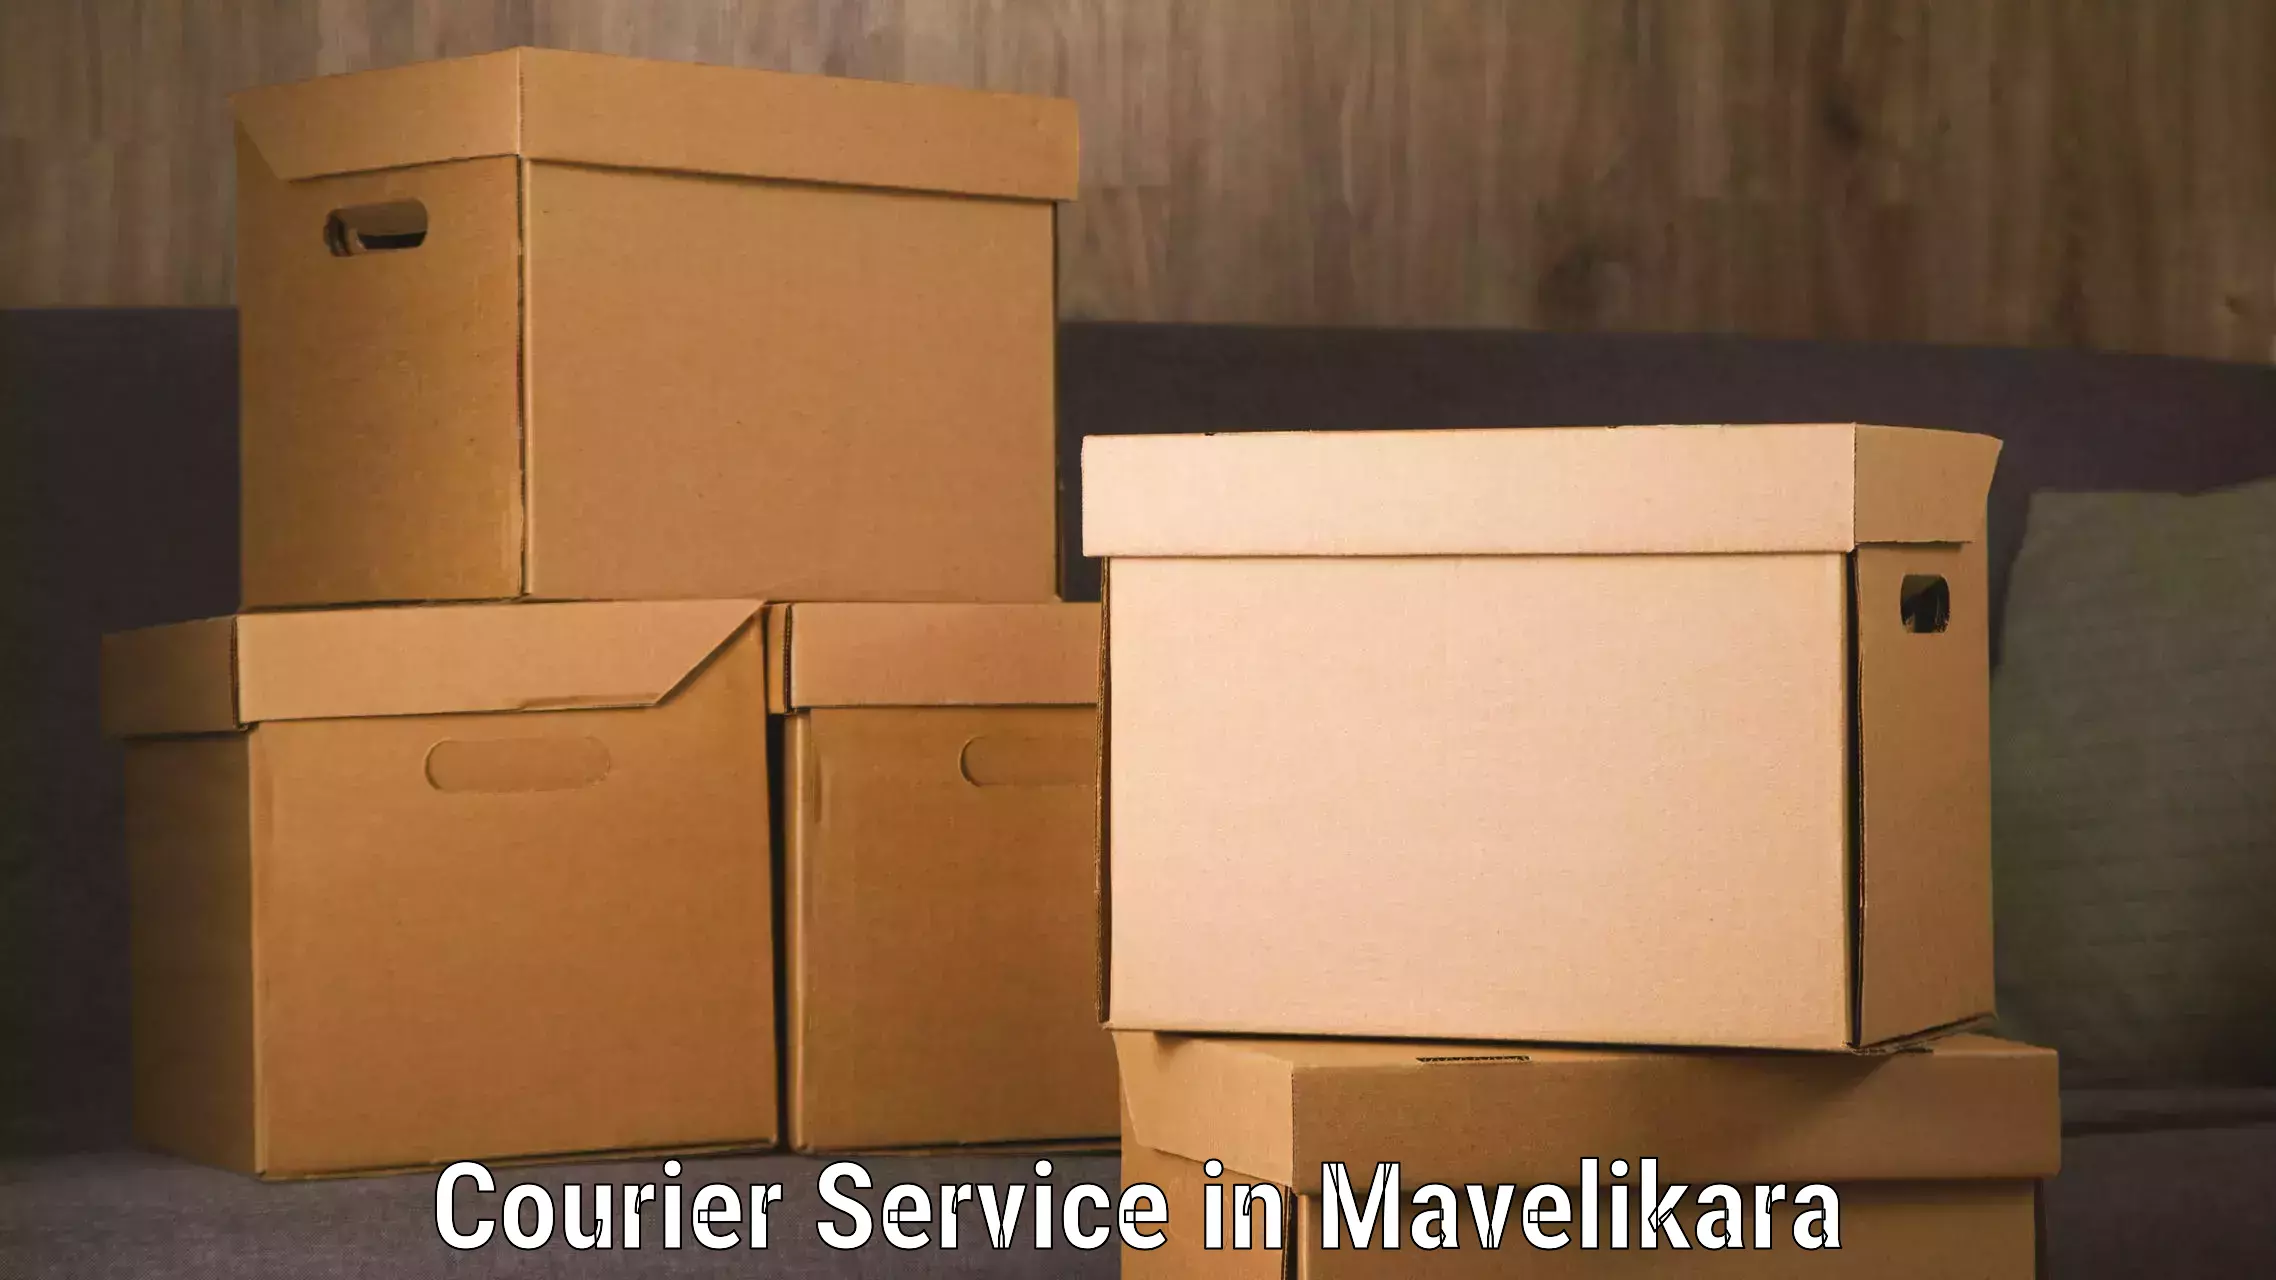 Customer-focused courier in Mavelikara